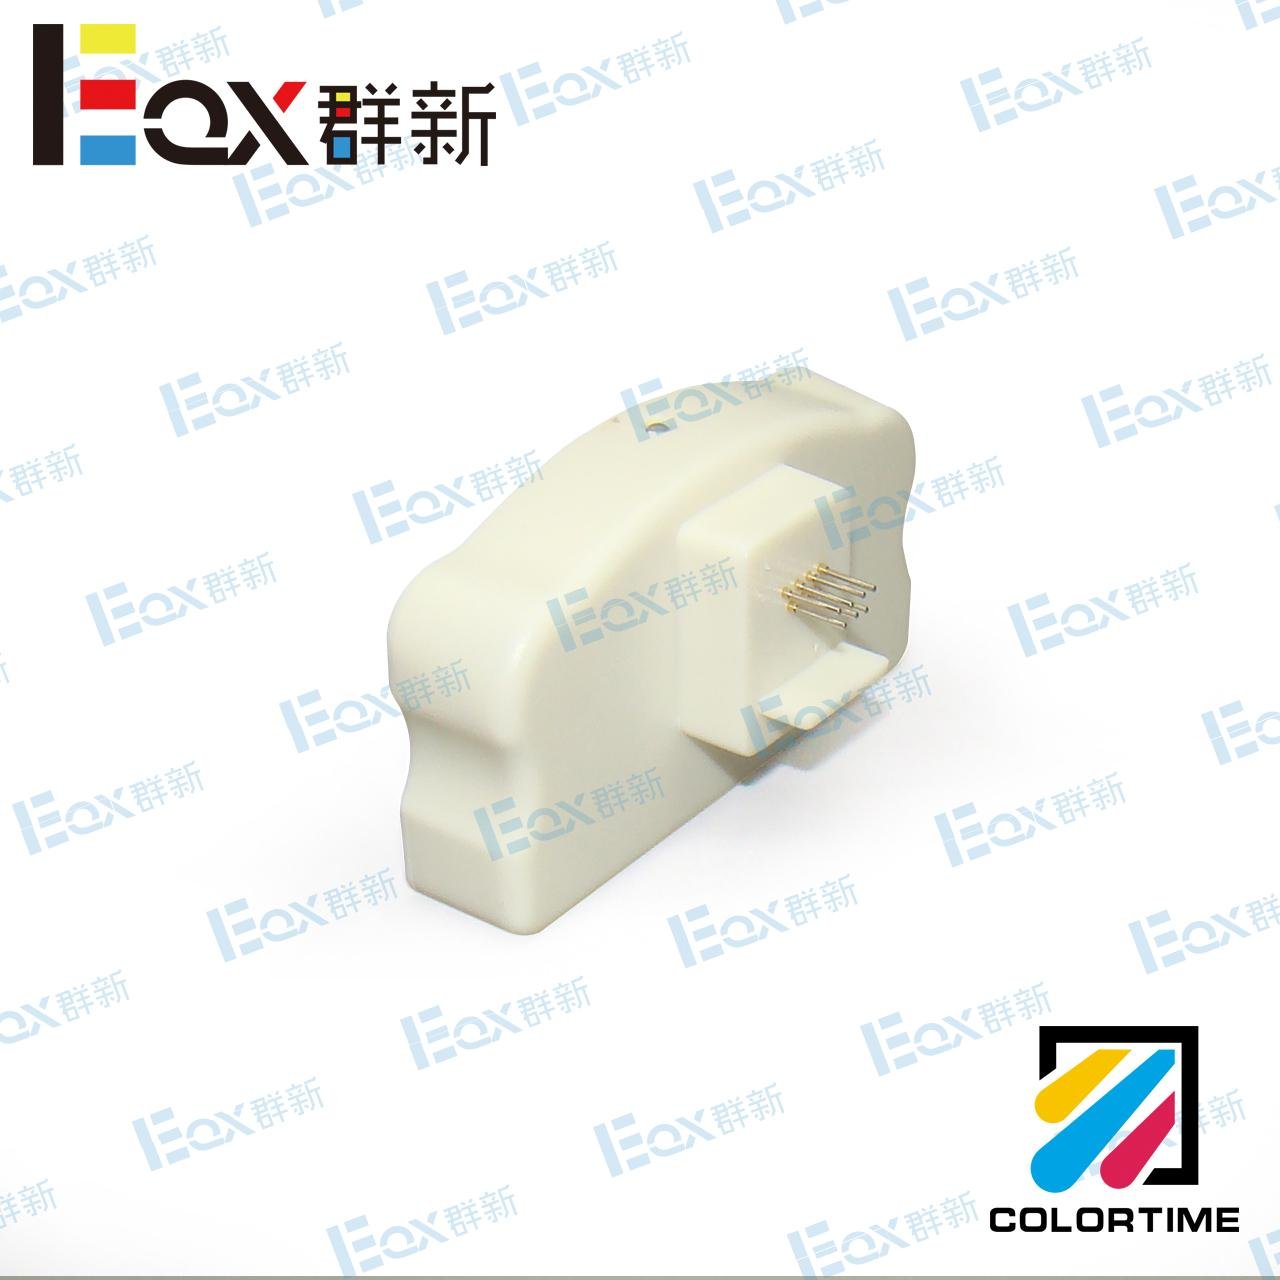 P700 P708 PX1V P900 P908 PX1VL Maintenance tank chip resetter for Epson printer 2